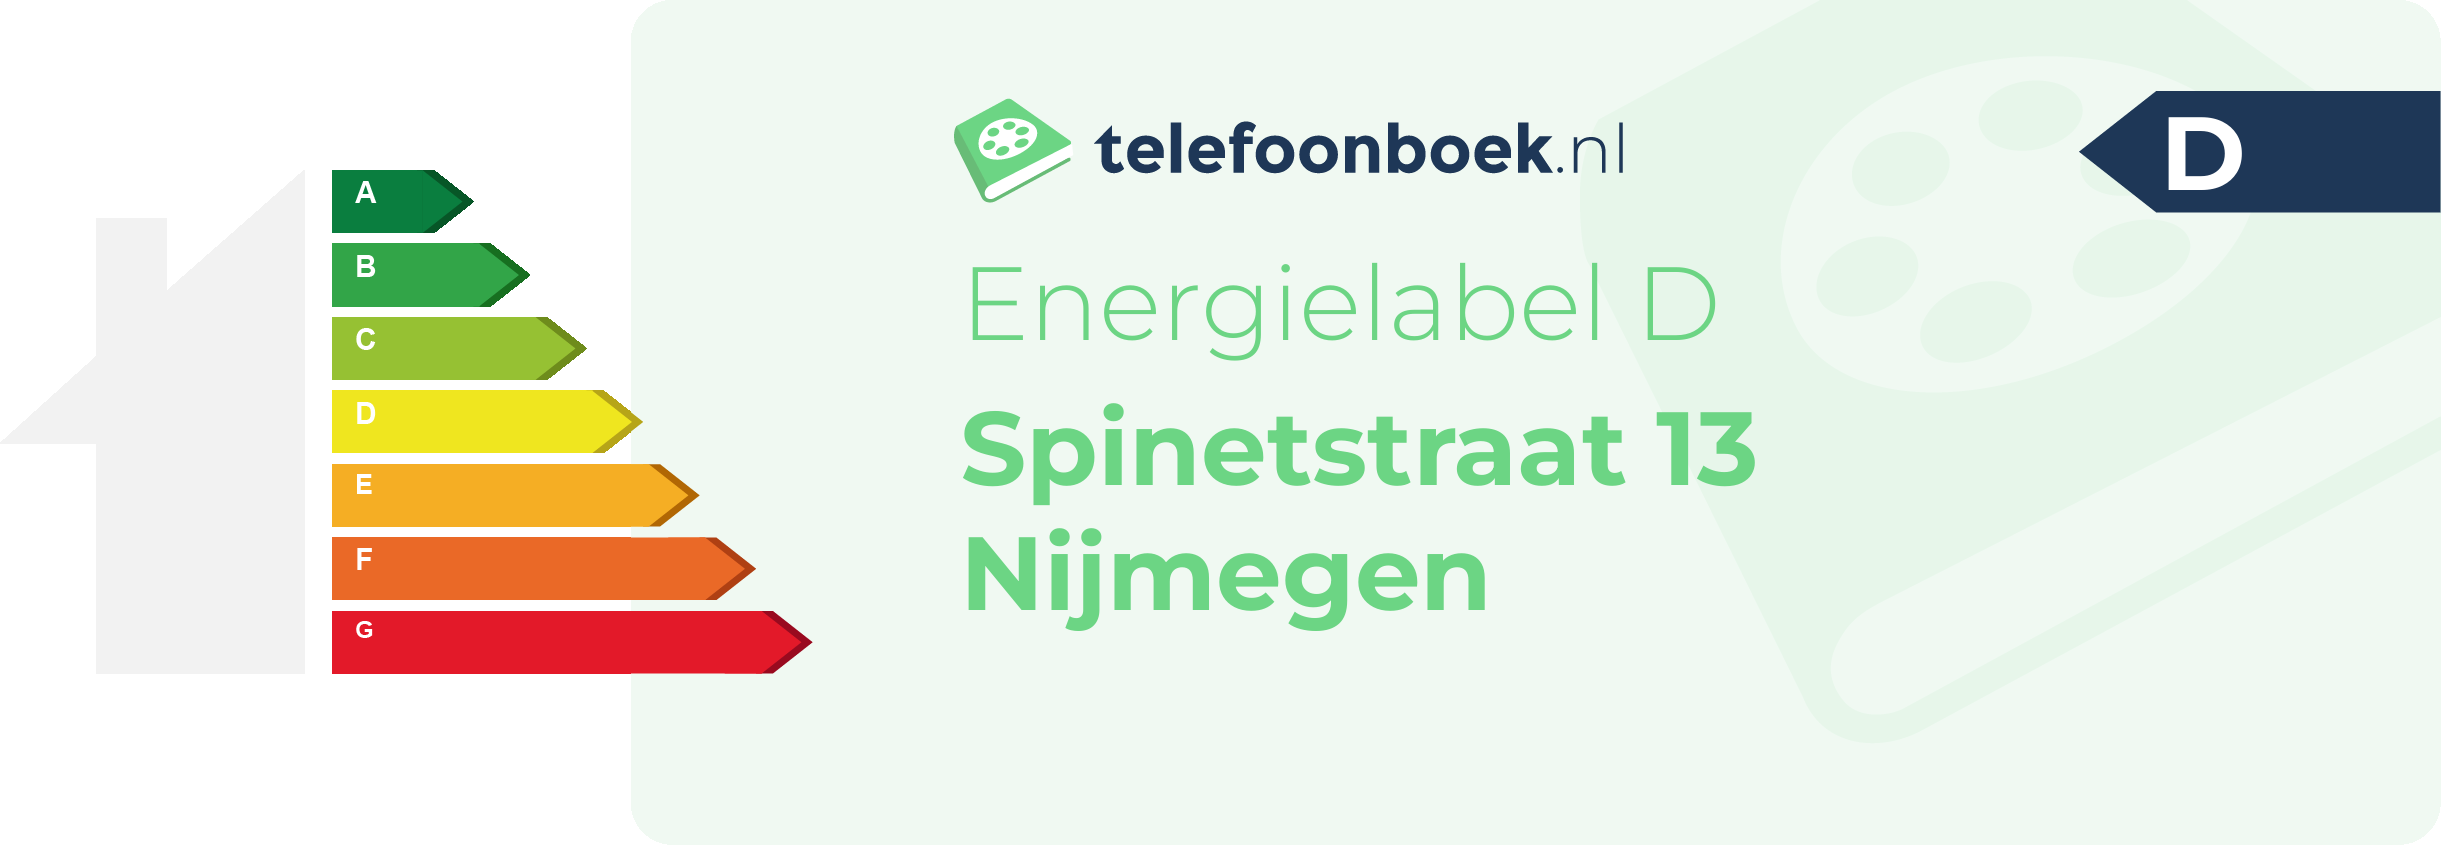 Energielabel Spinetstraat 13 Nijmegen